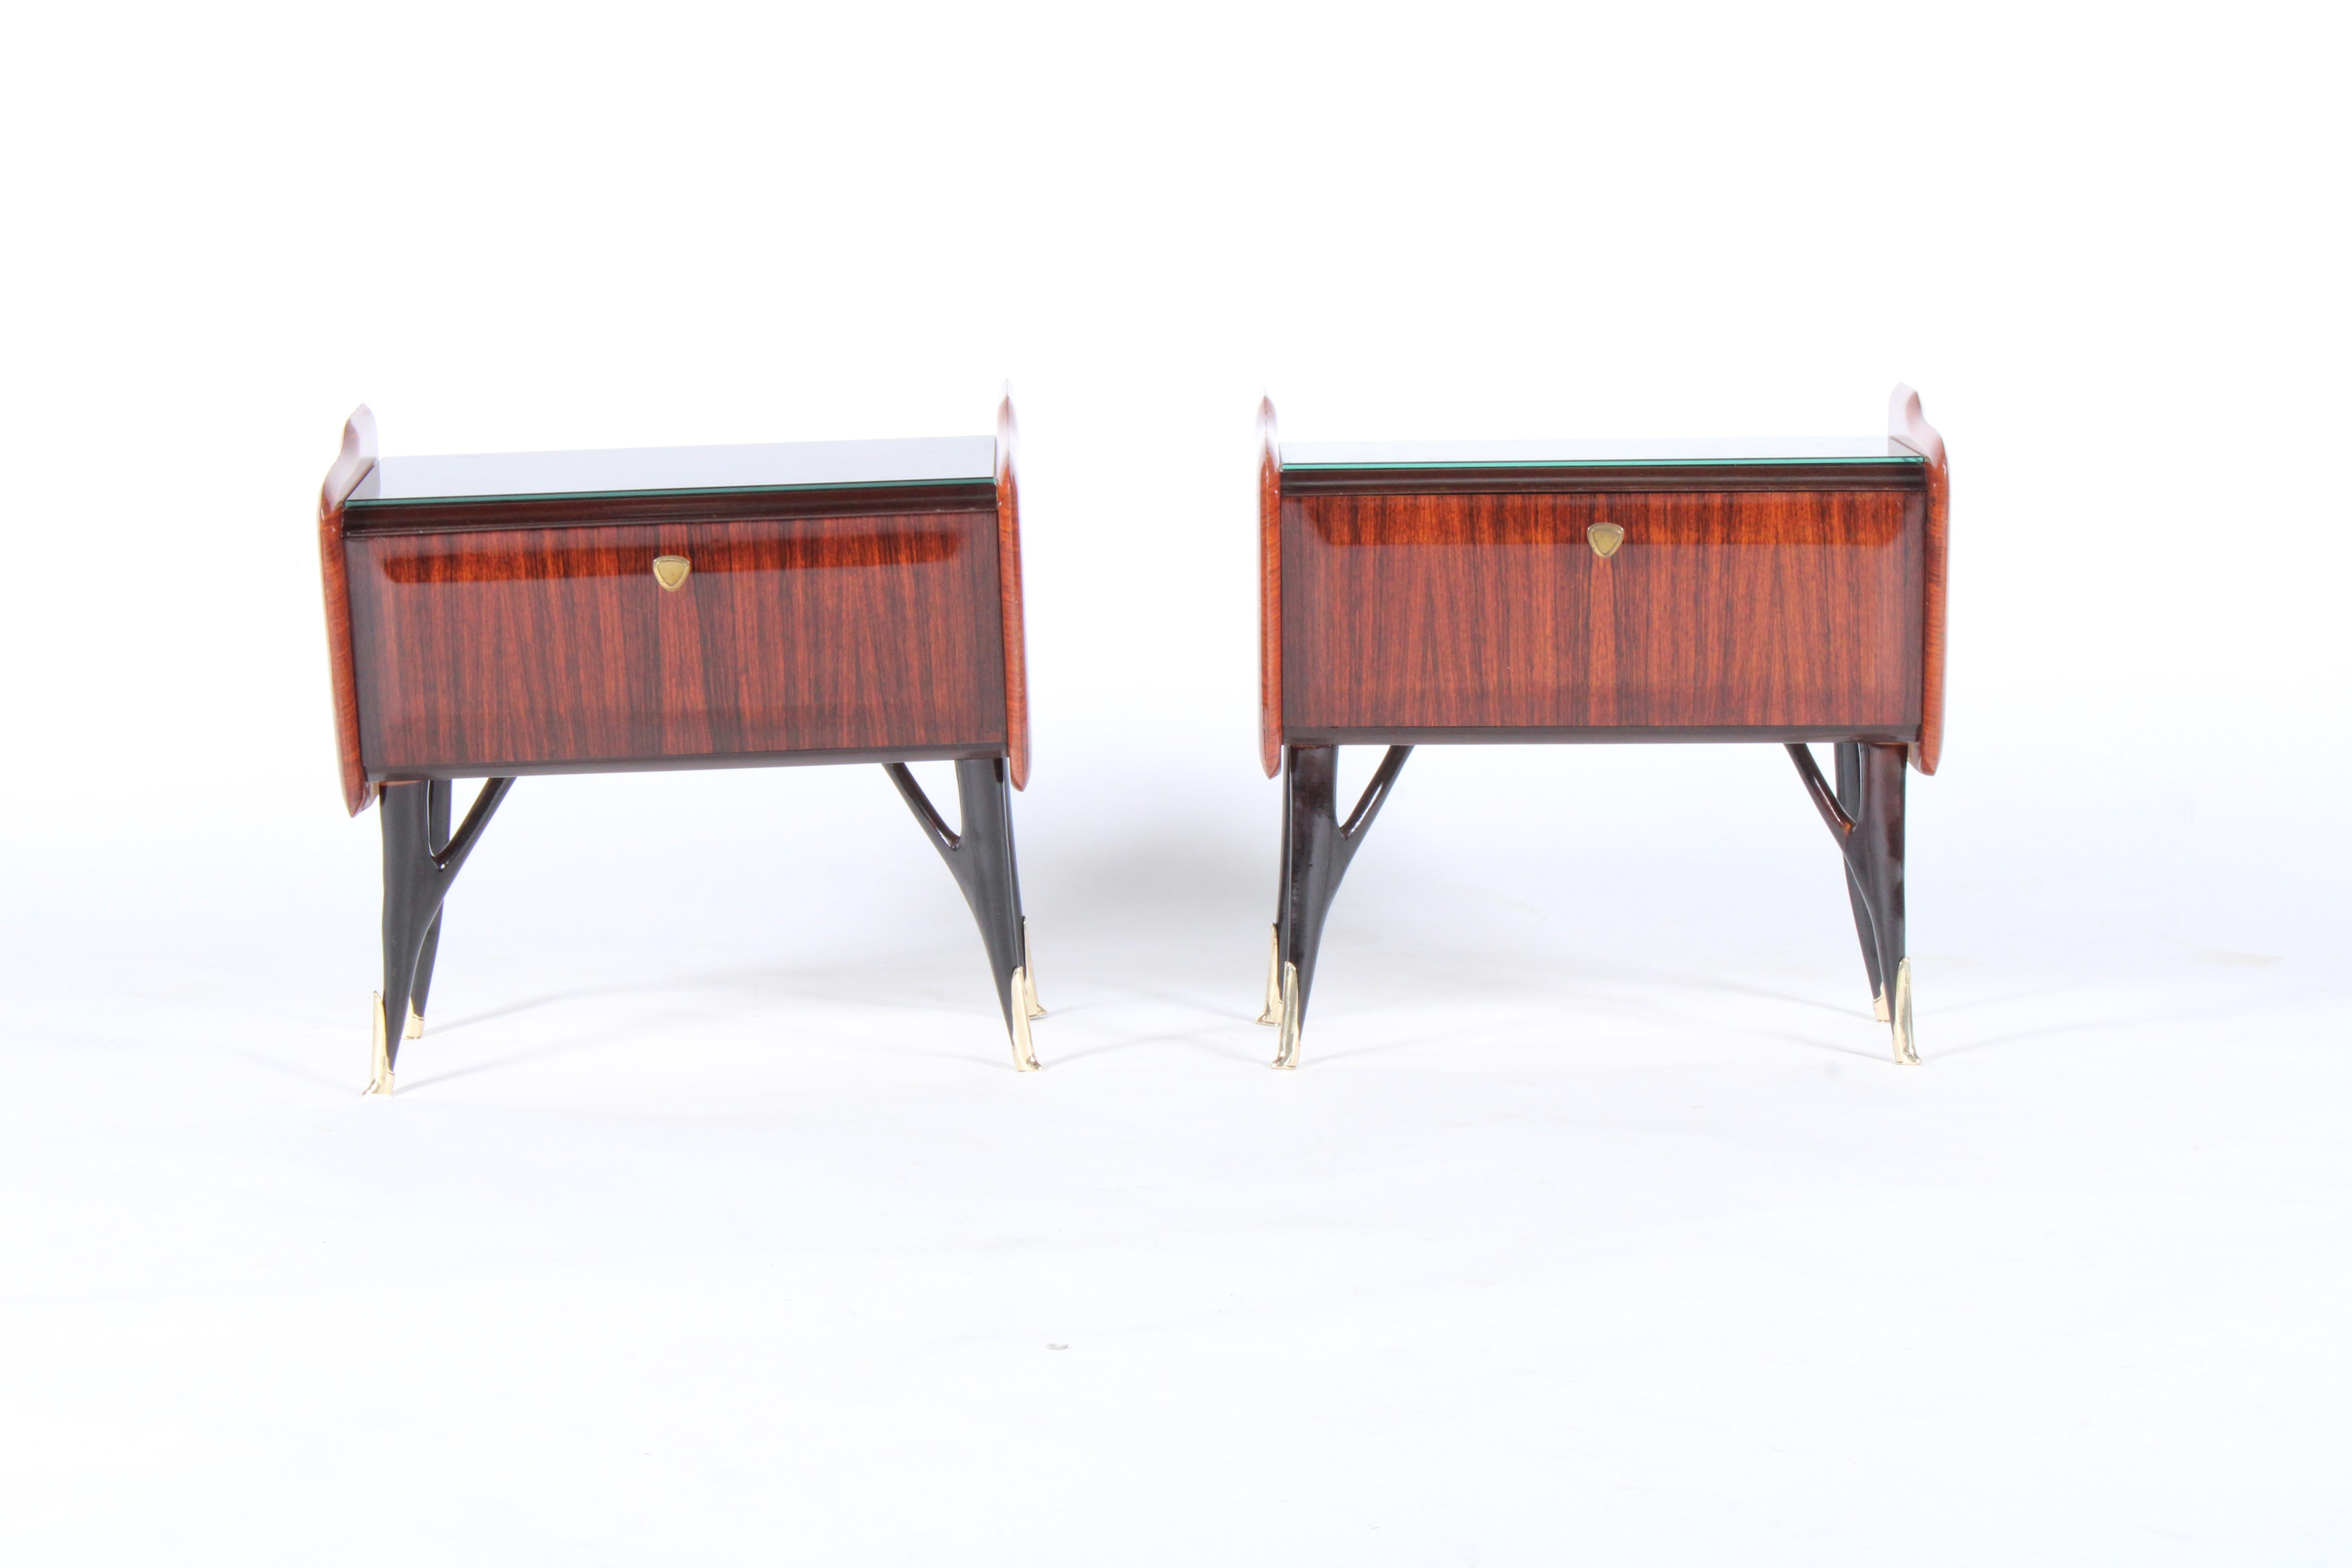 Exceptionnelle paire de tables de chevet italiennes d'origine du milieu du siècle dernier en magnifique palissandre pallisandro. La base sculpturale en bois d'ébène est très semblable à celle d'Ico Parisi. Cette paire est dotée d'un plateau en verre